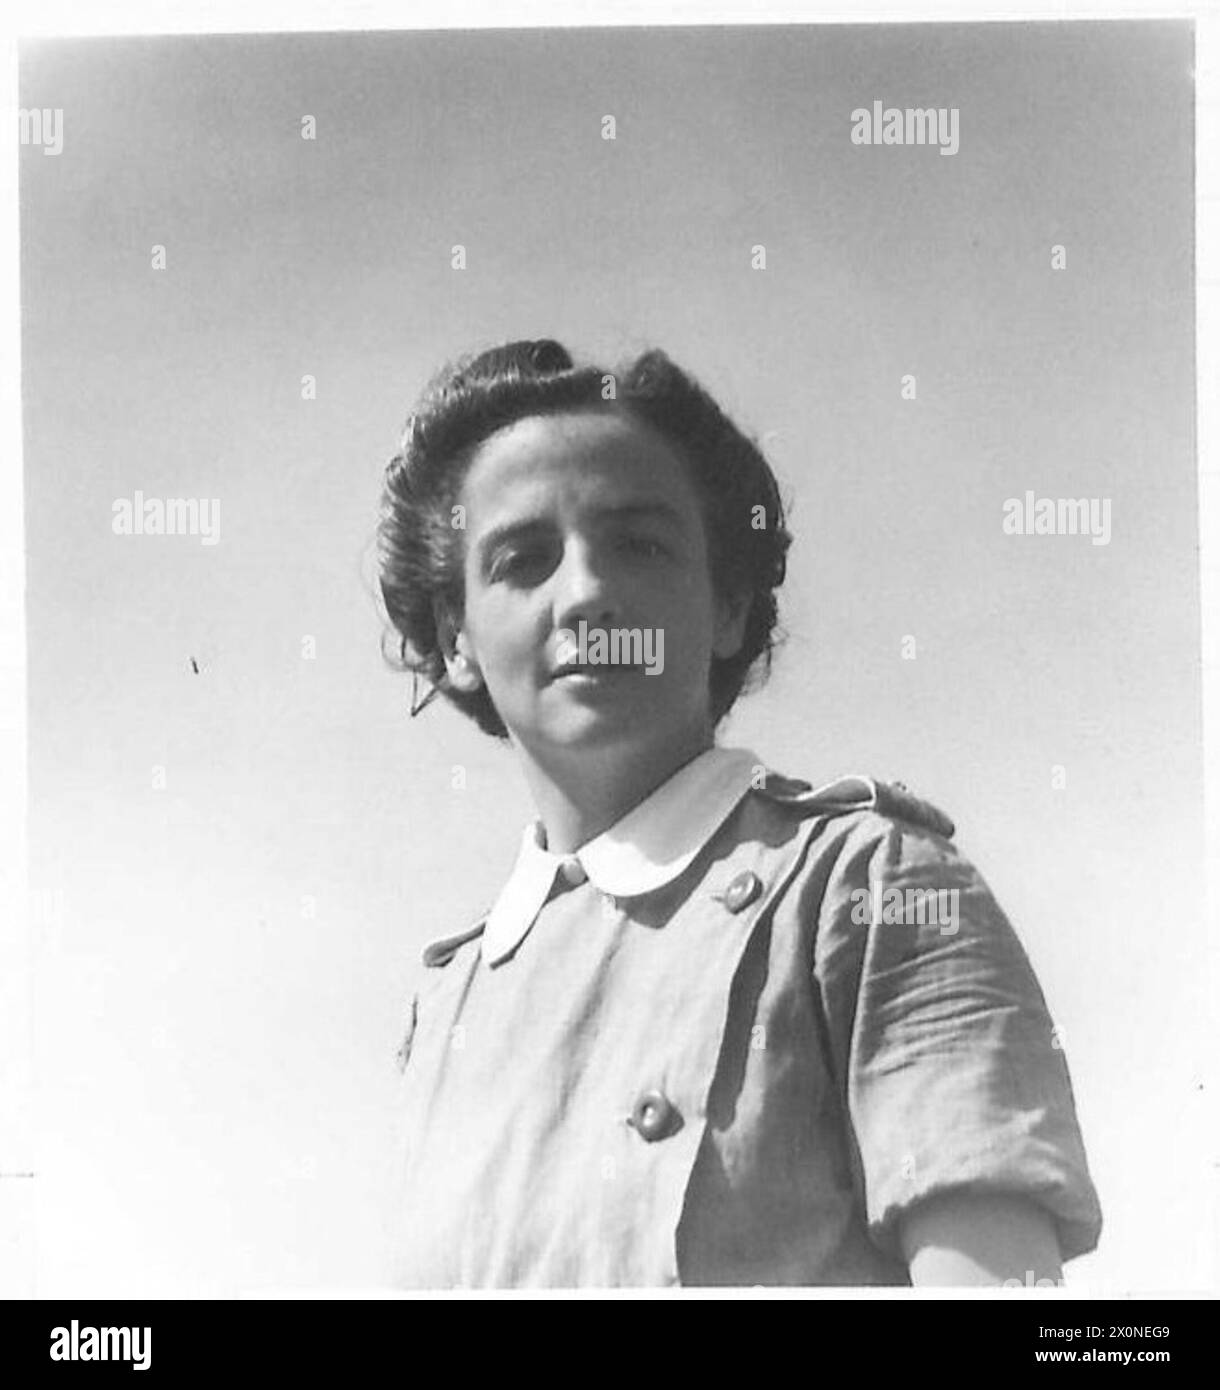 DONNE IN GUERRA - sorella M. Willis in kit teatro (abito sterile e maschera). Negativo fotografico, British Army Foto Stock